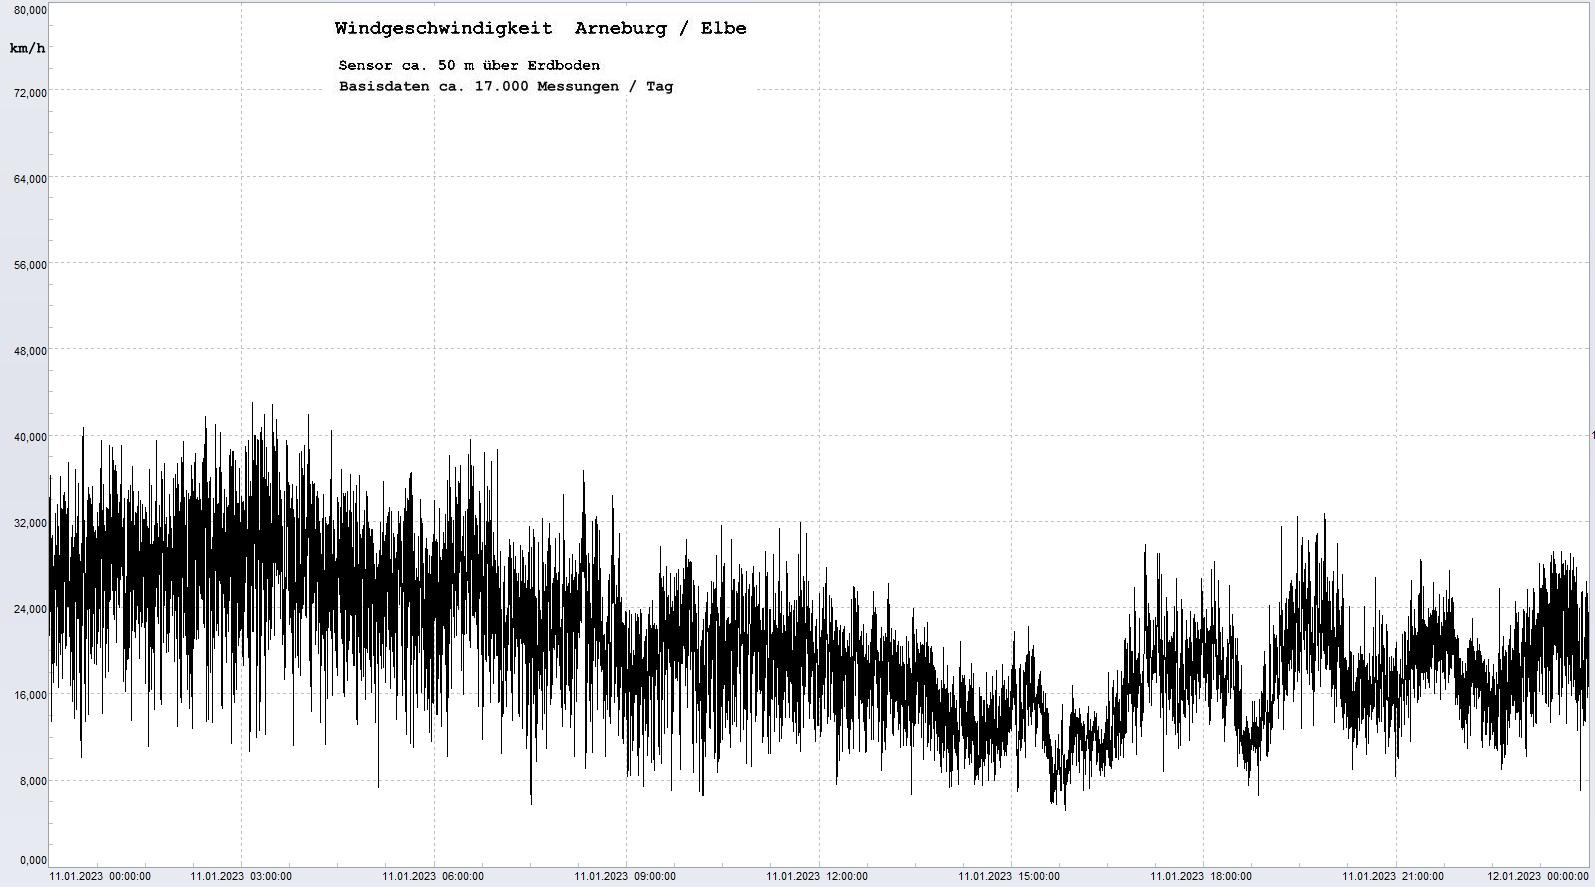 Arneburg Tages-Diagramm Winddaten, 11.01.2023
  Diagramm, Sensor auf Gebude, ca. 50 m ber Erdboden, Basis: 5s-Aufzeichnung